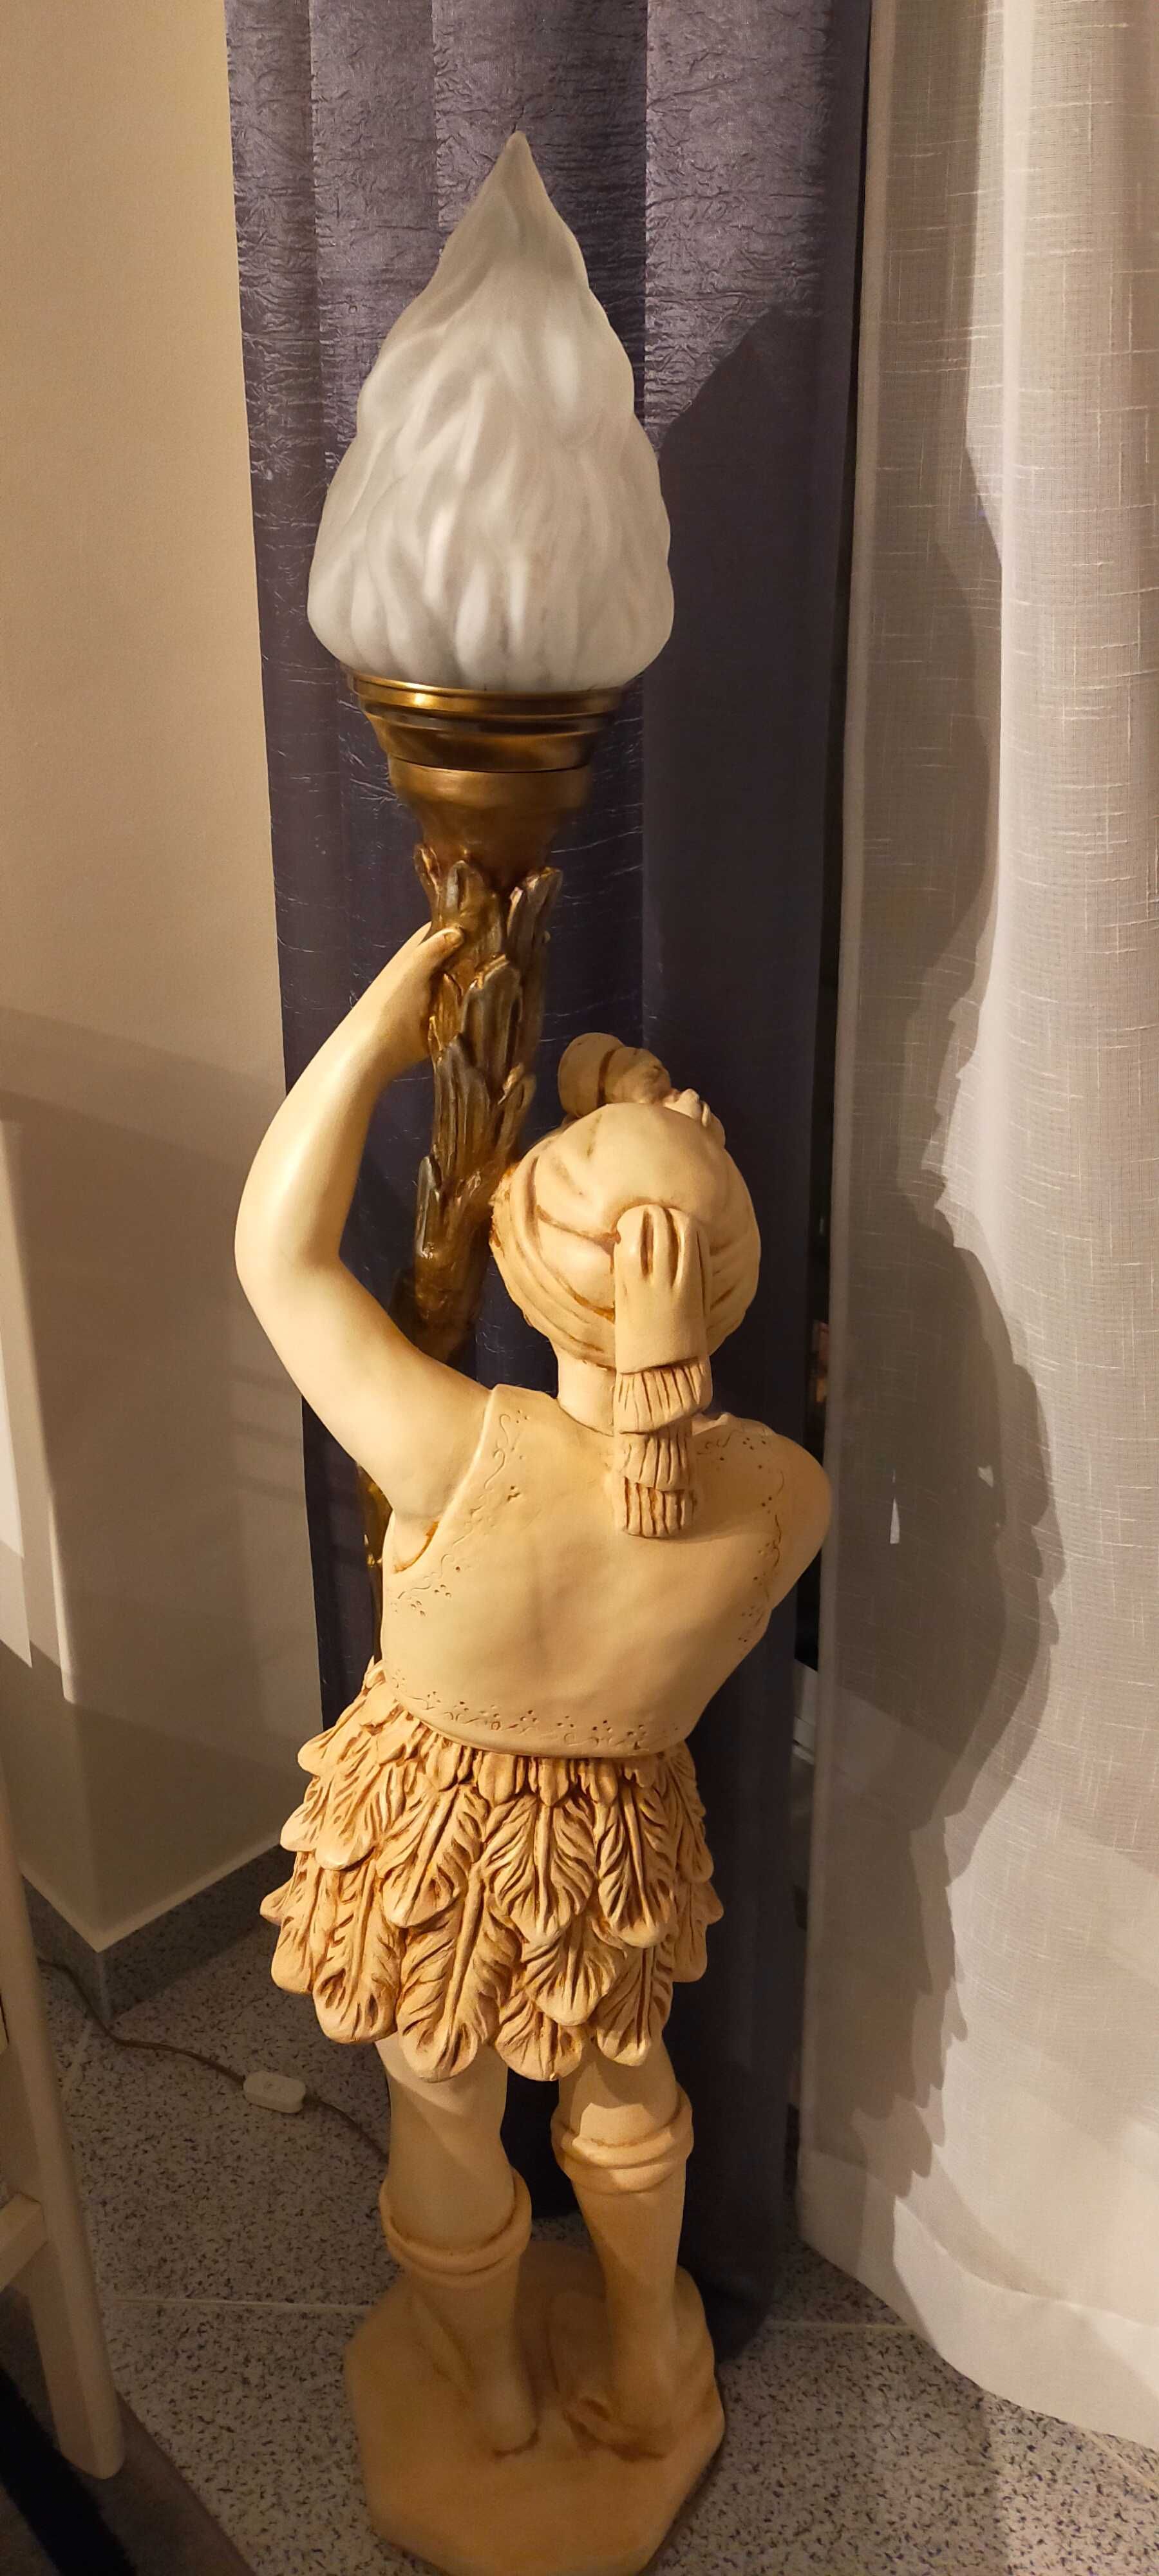 Estátua de mulher decorativa com lâmpada